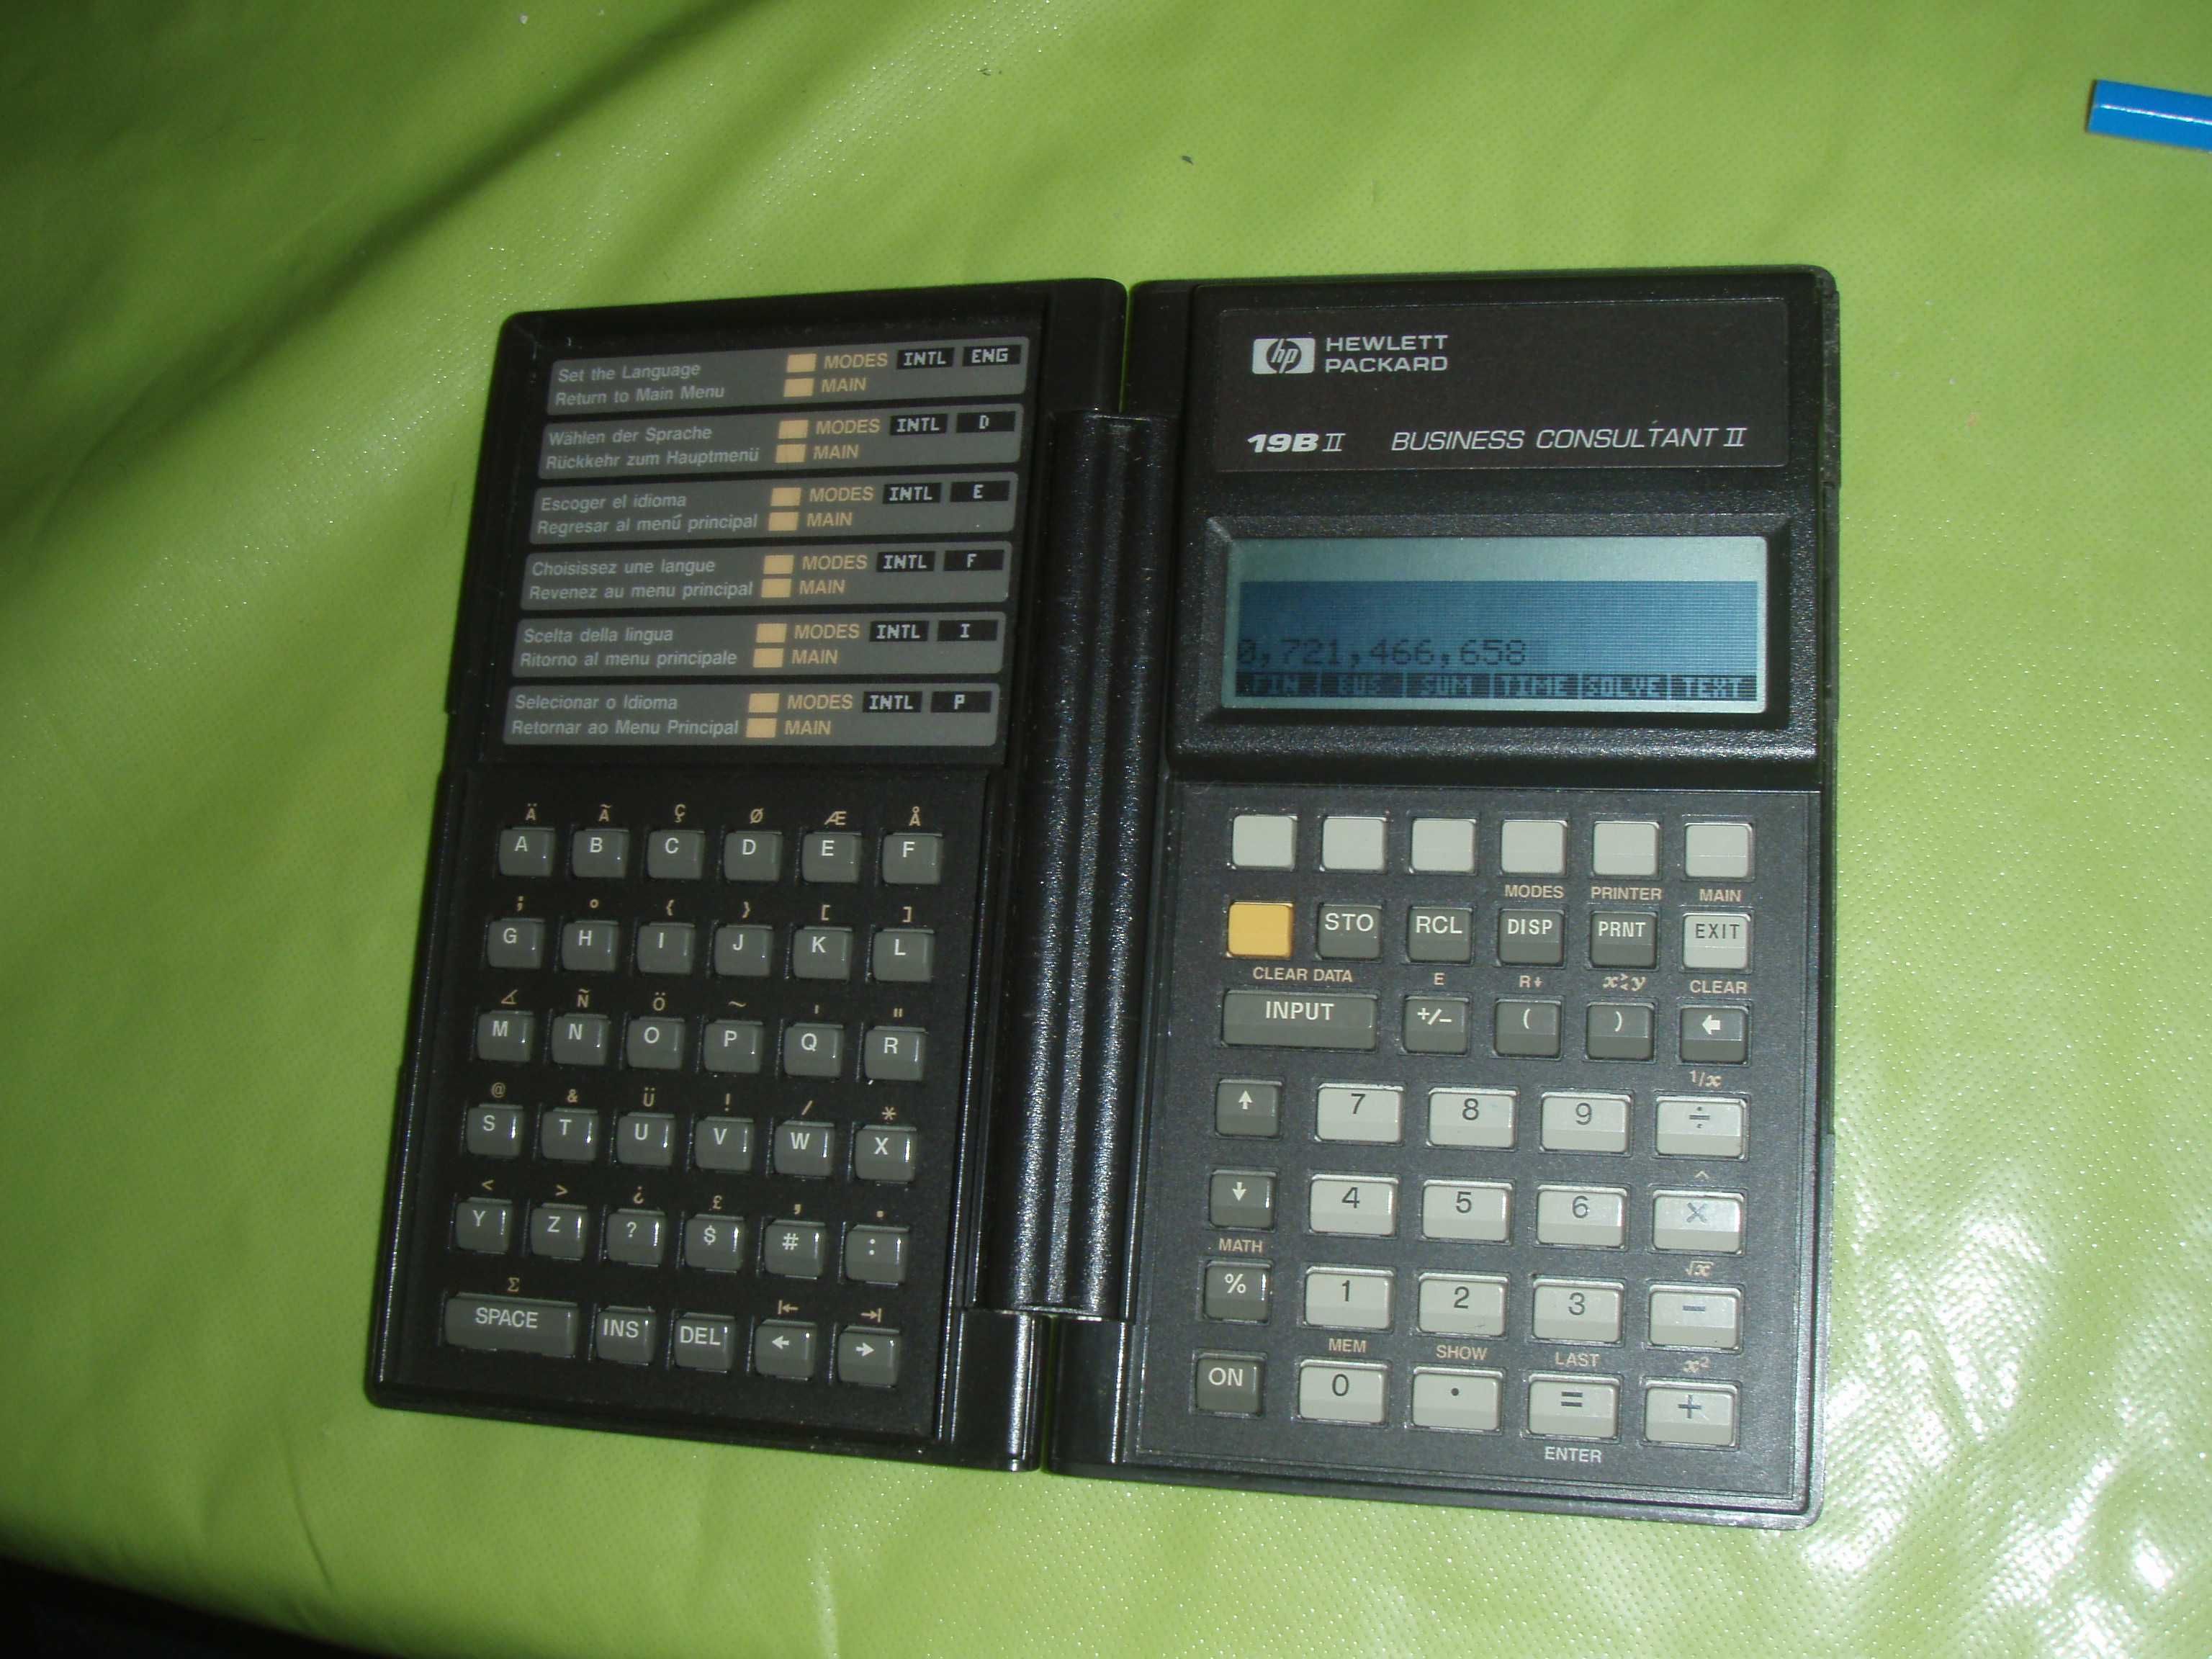 Calculator portabil HP 19B II BUSINESS CONSULTANT II